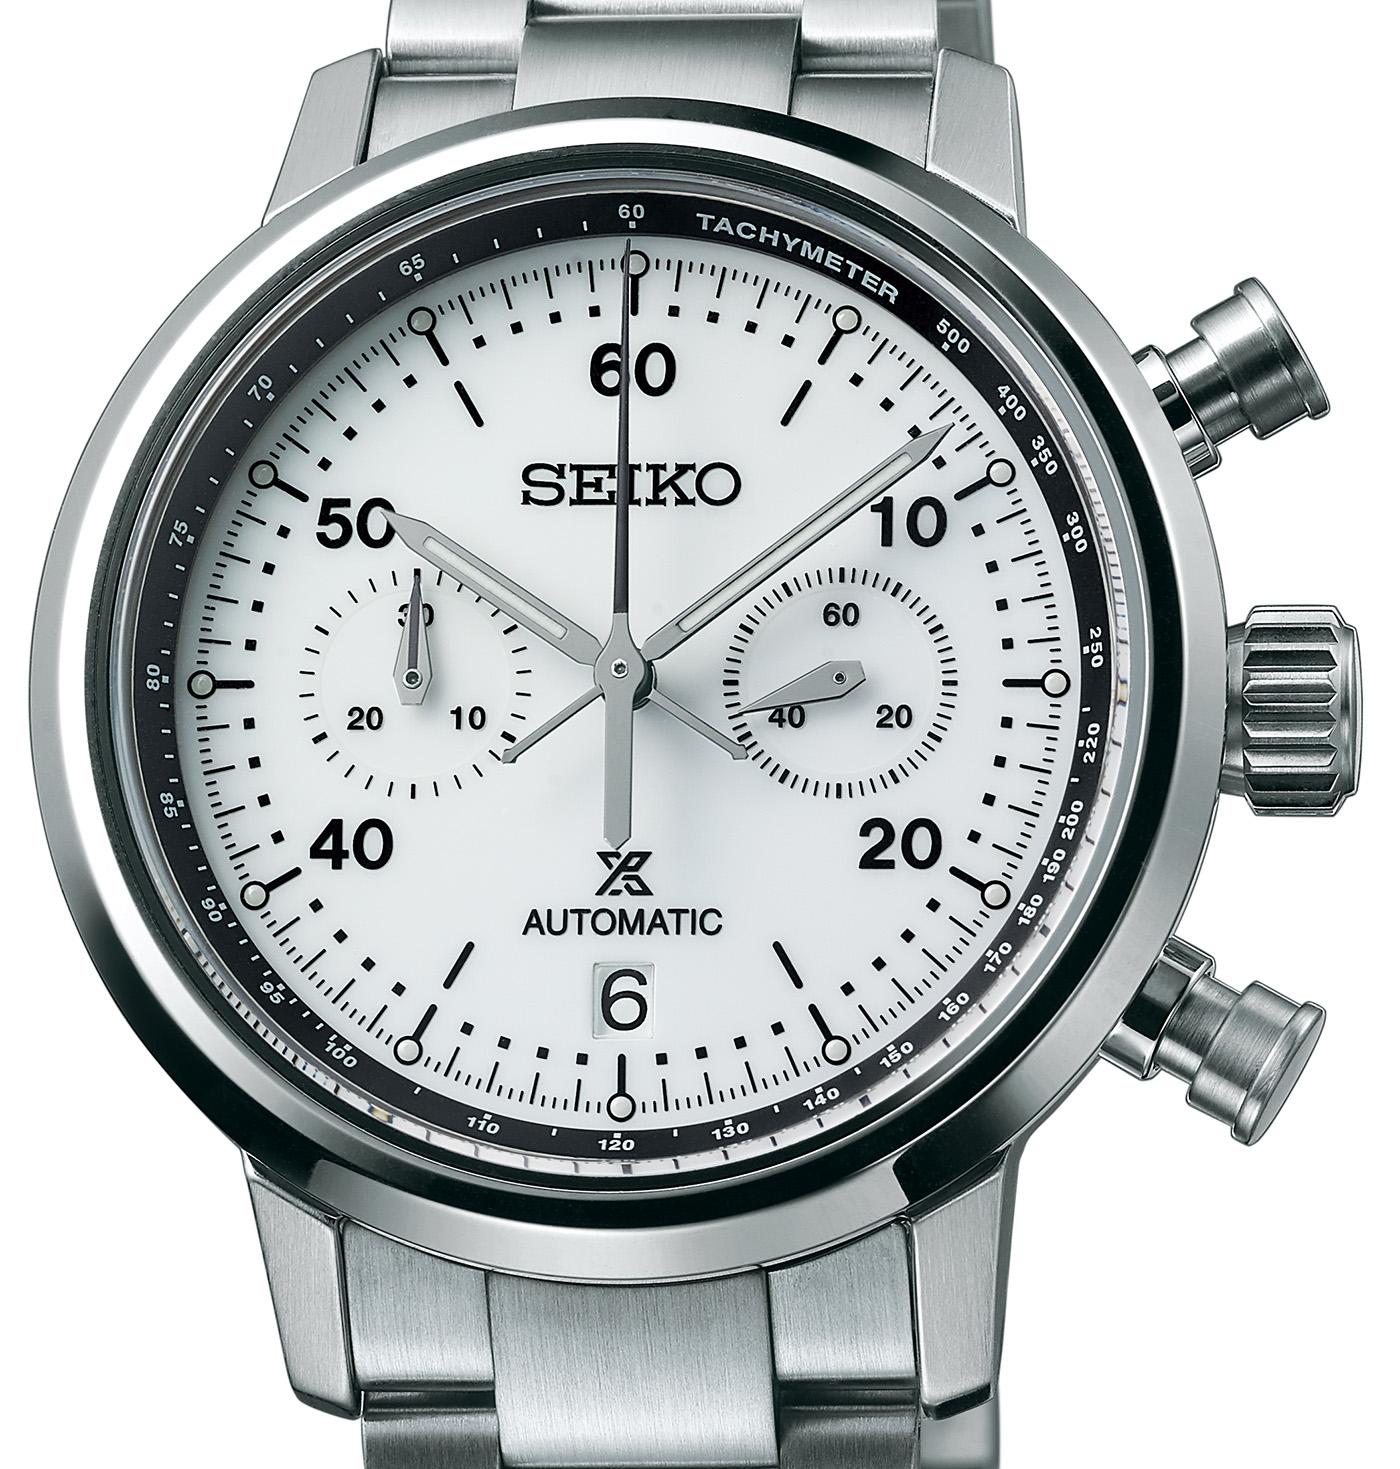 Seiko Prospex Speedtimer Mechanical Chronograph